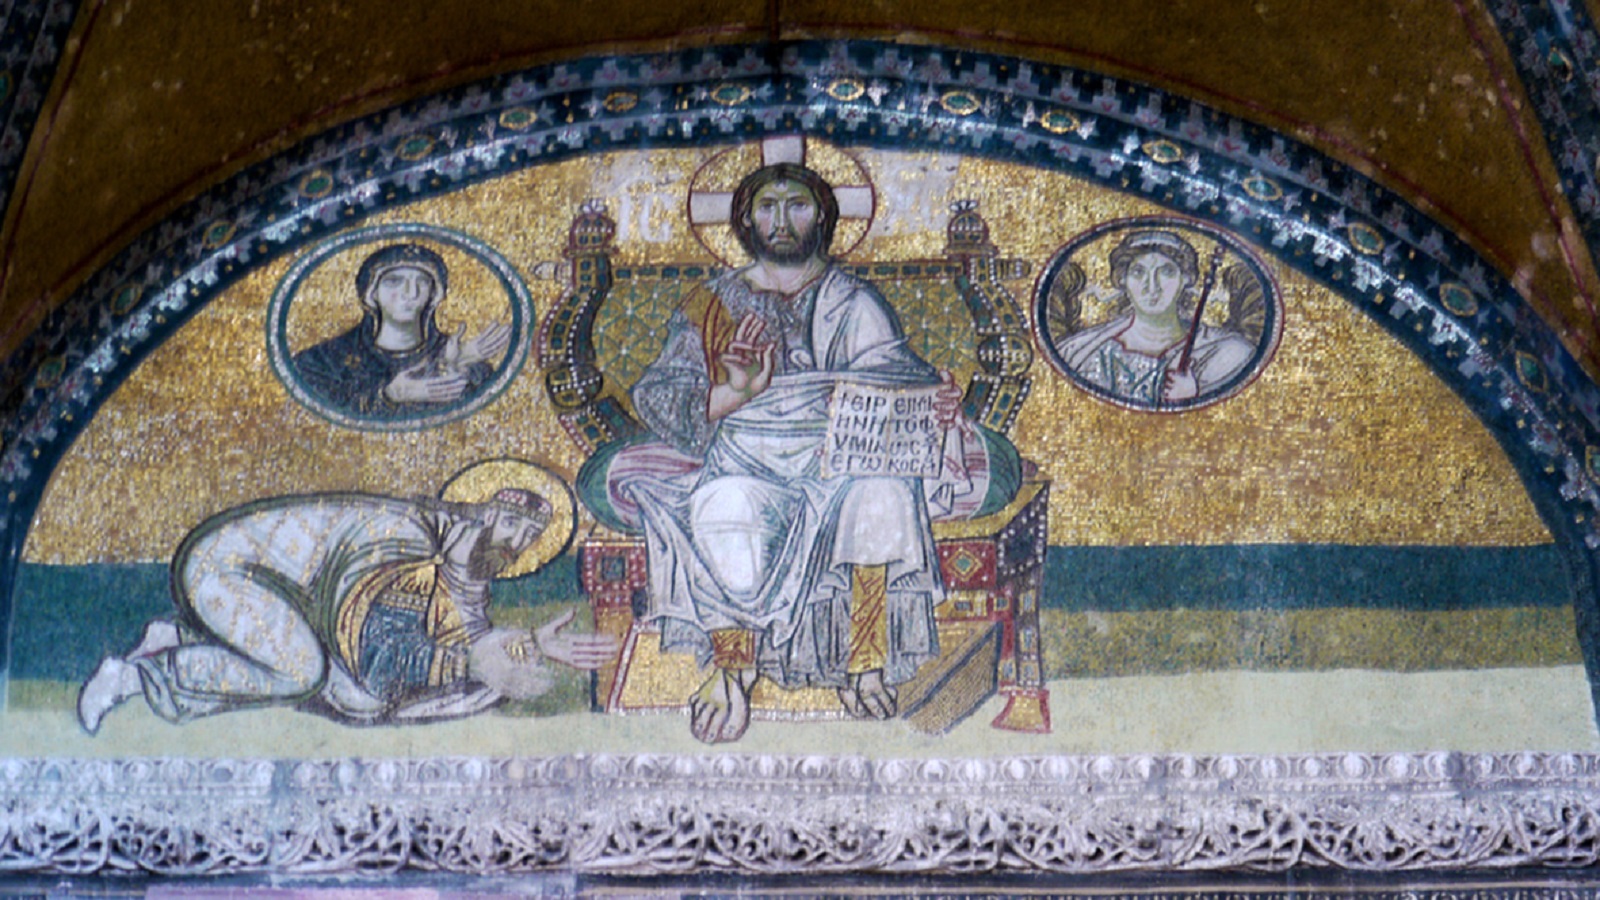  الإمبراطور لاون العاشر ساجدا أمام المسيح الجالس على العرش، القرن العاشر.